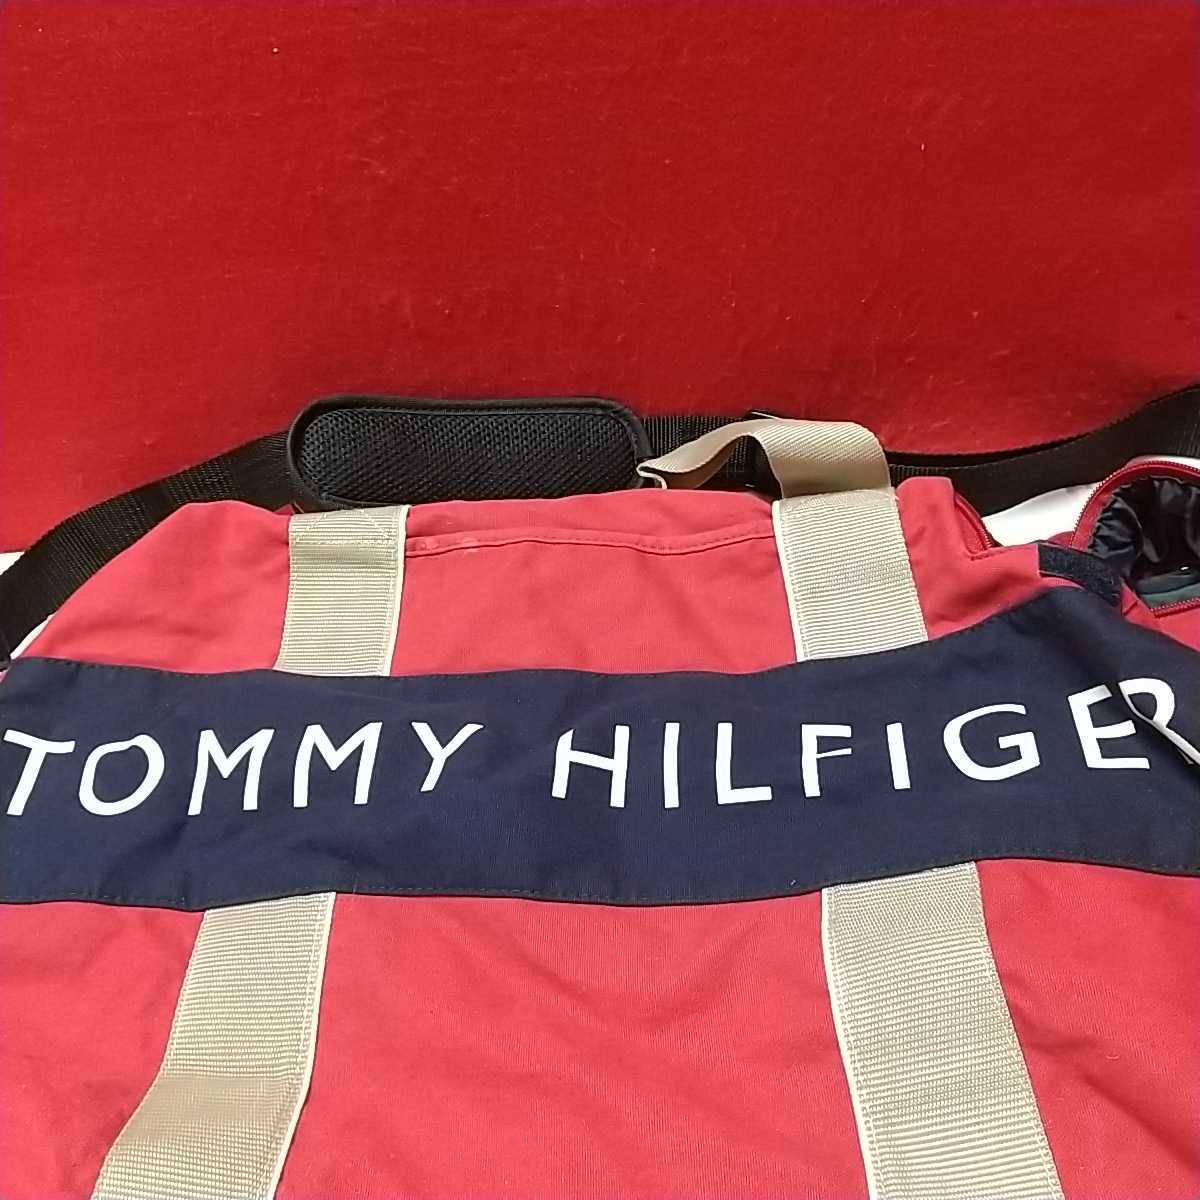 トミーヒルフィガーTOMMY HILFIGER 2way 大容量布製ボストンバッグ